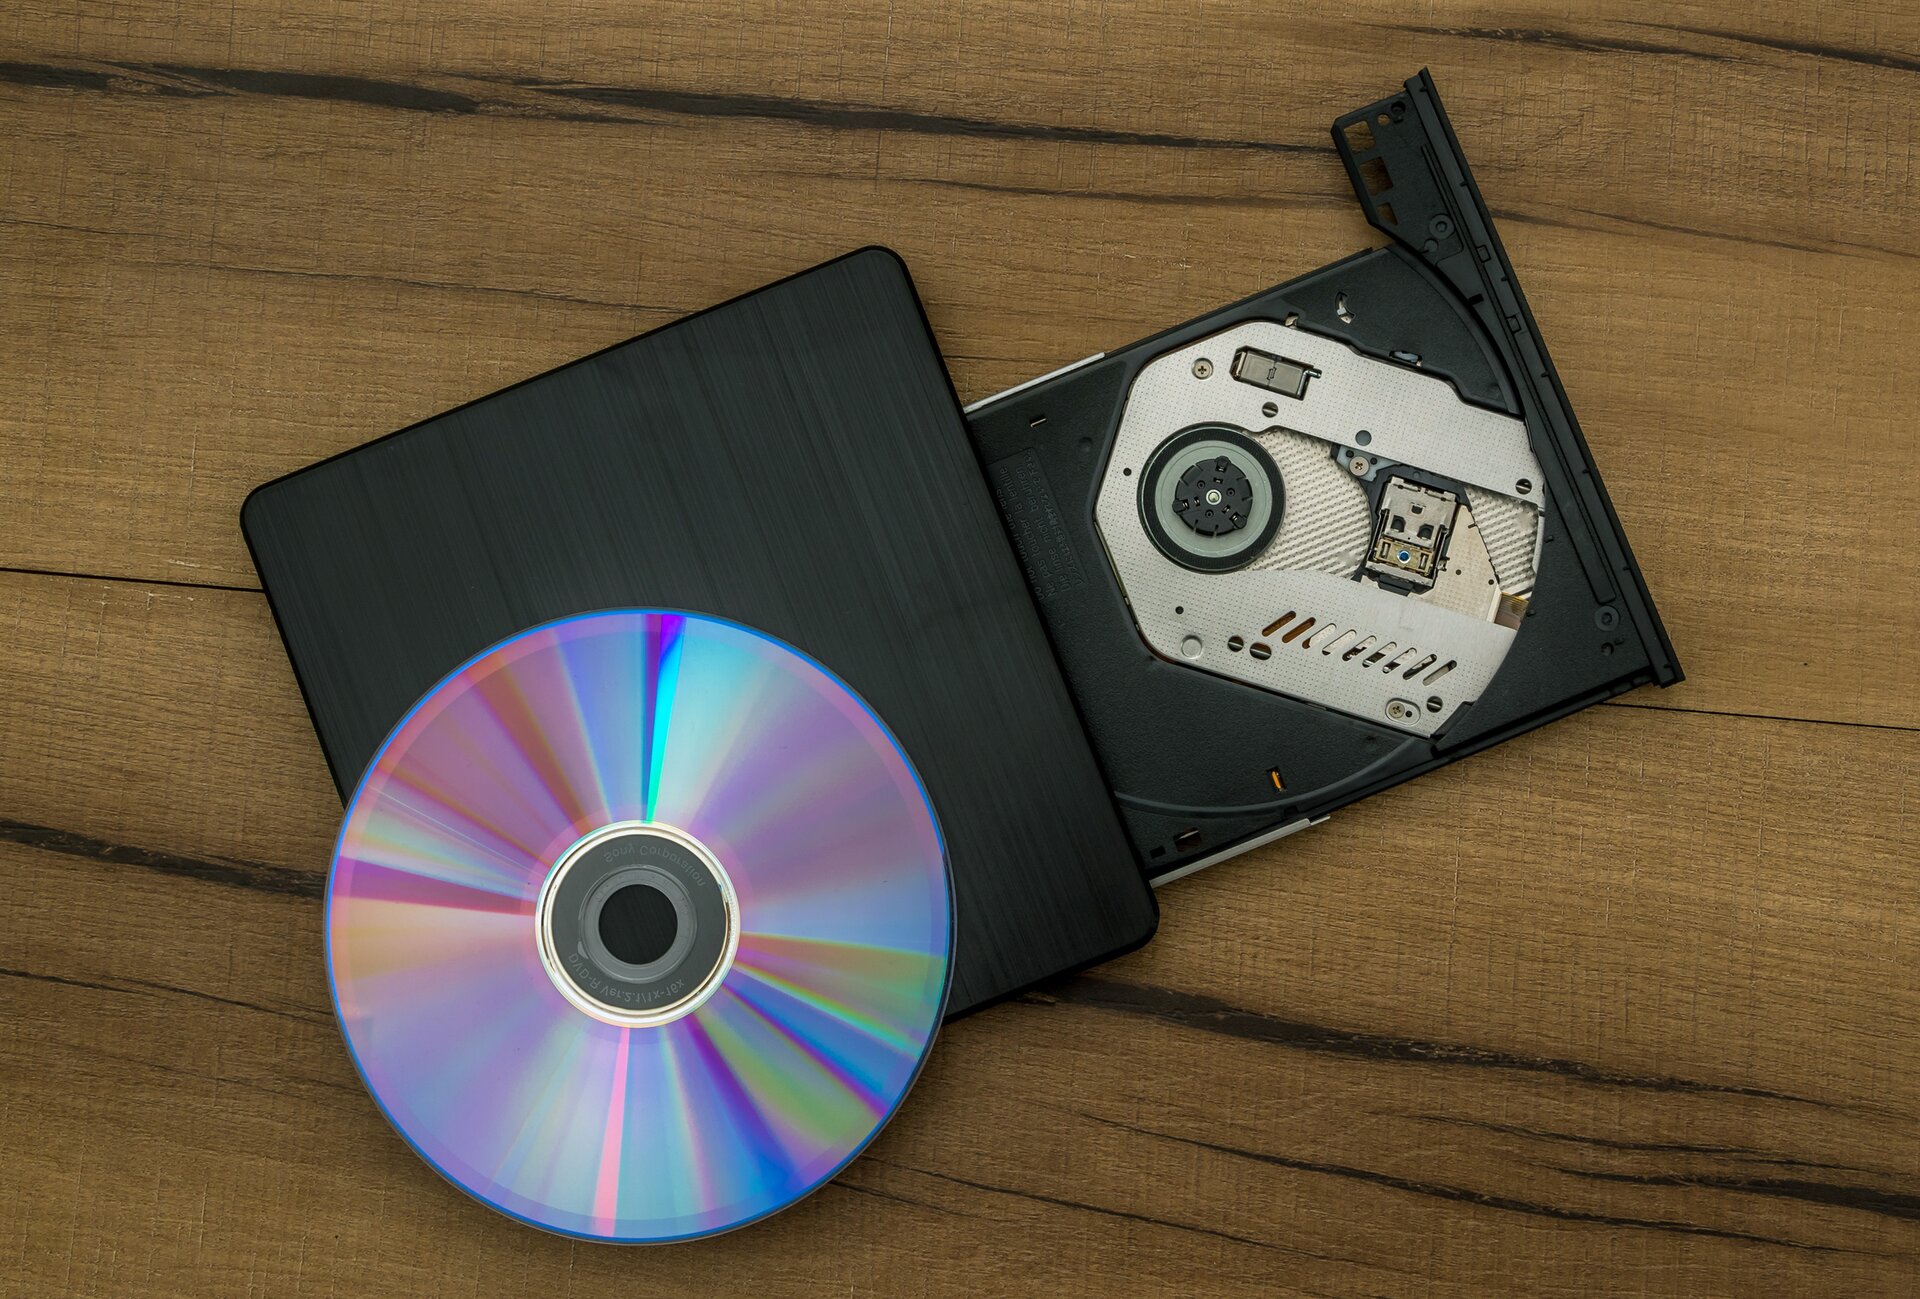 Rys. 3. Na zdjęciu znajduje się płyta CD oraz kieszeń komputera, w której umieszcza się płytę w celu jej odczytania.